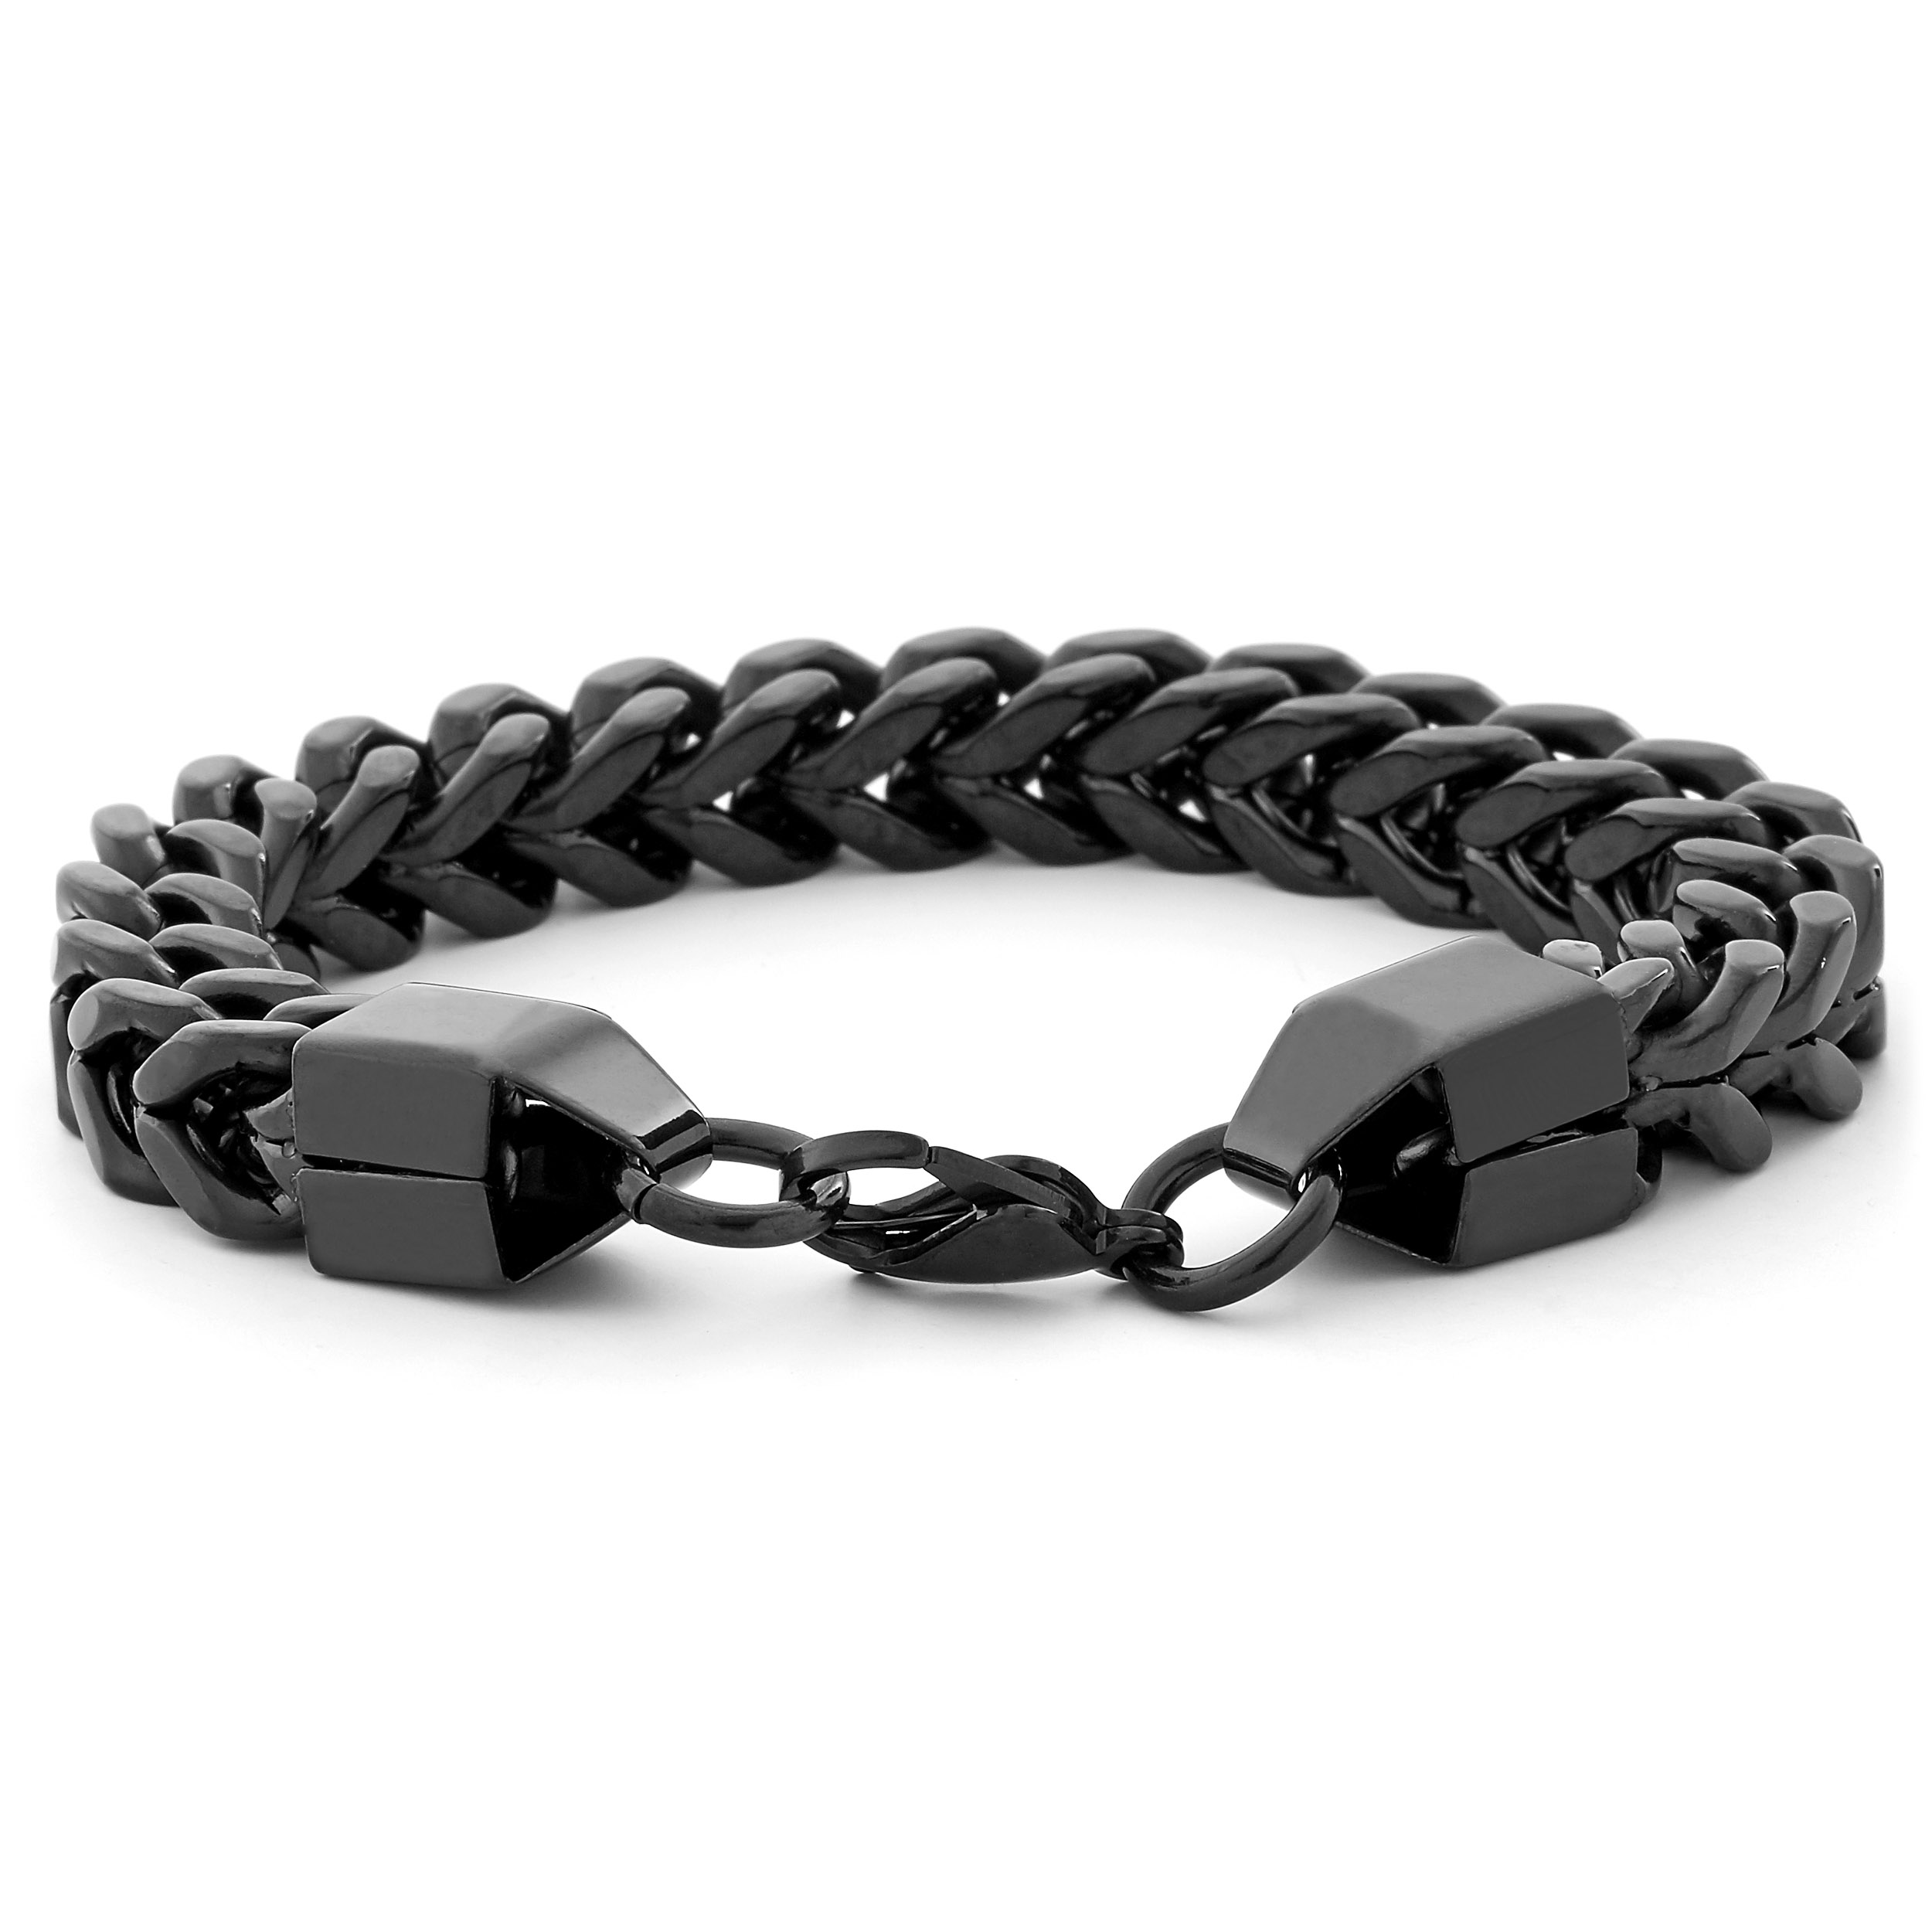 Bracelet Stainless Steel Men | Stainless Steel Wristband | Jewelry Men  Bracelets - Black - Aliexpress